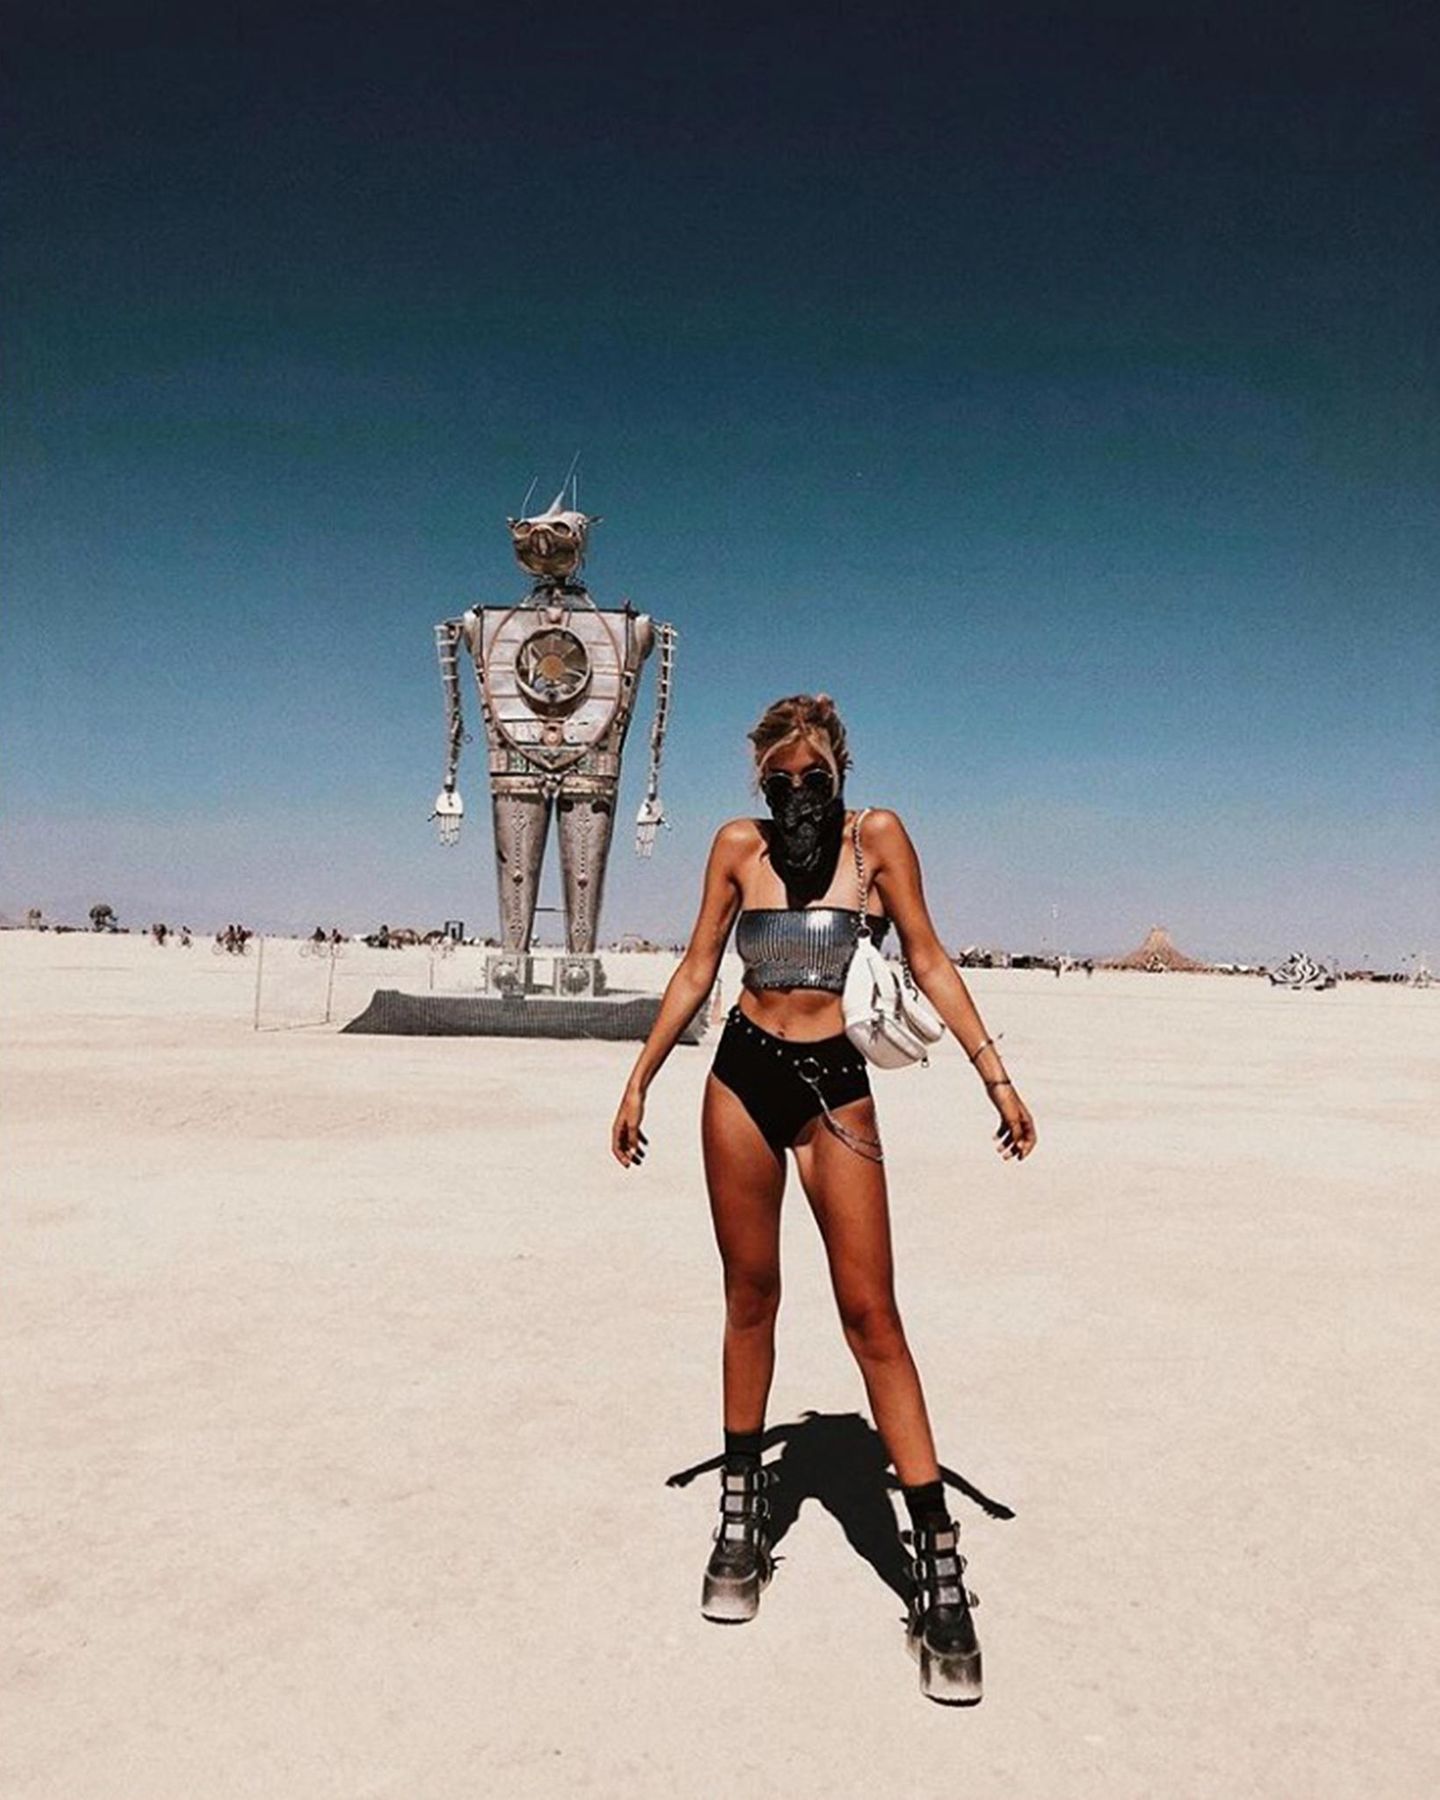 Influencerin Xenia Overdose erfreut ihre Instagram-Fans nach einer intensiven Woche mit diesem sexy "iRobot"-Style vom diesjährigen Burning Man. Mit knappem Metallic-Bandeau-Top und noch knapperer Hot-Pants zu derben Plateau-Boots liegt sie voll im Trend des Kultfestivals in der Black-Rock-Wüste in Nevada.